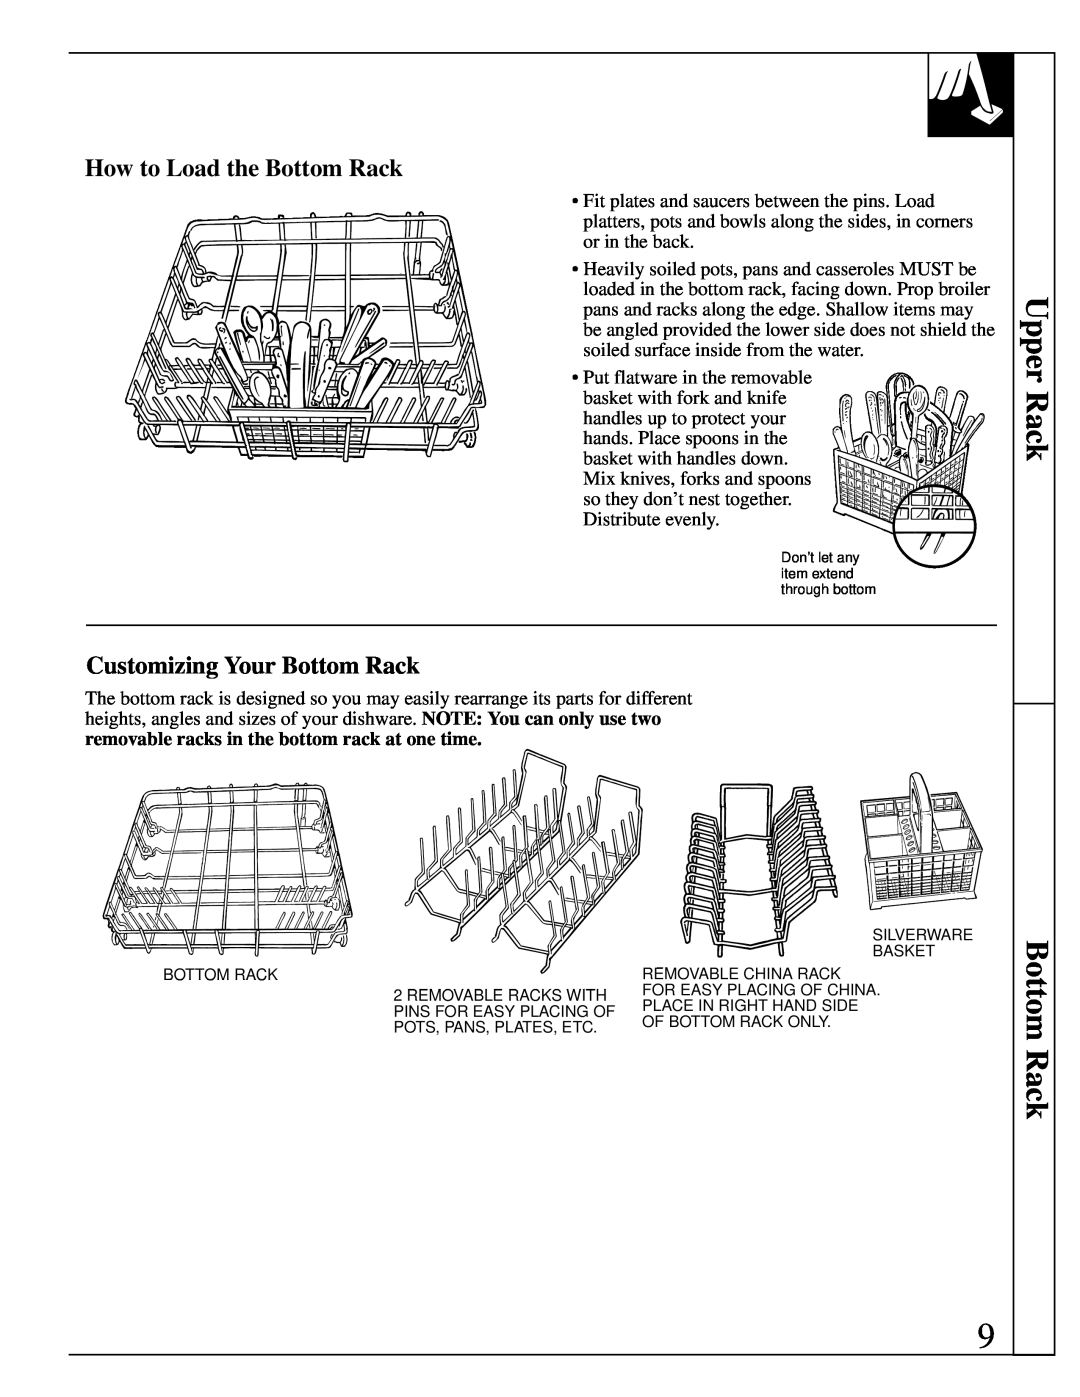 GE Monogram ZBD4700 manual Upper Rack Bottom Rack, How to Load the Bottom Rack, Customizing Your Bottom Rack 